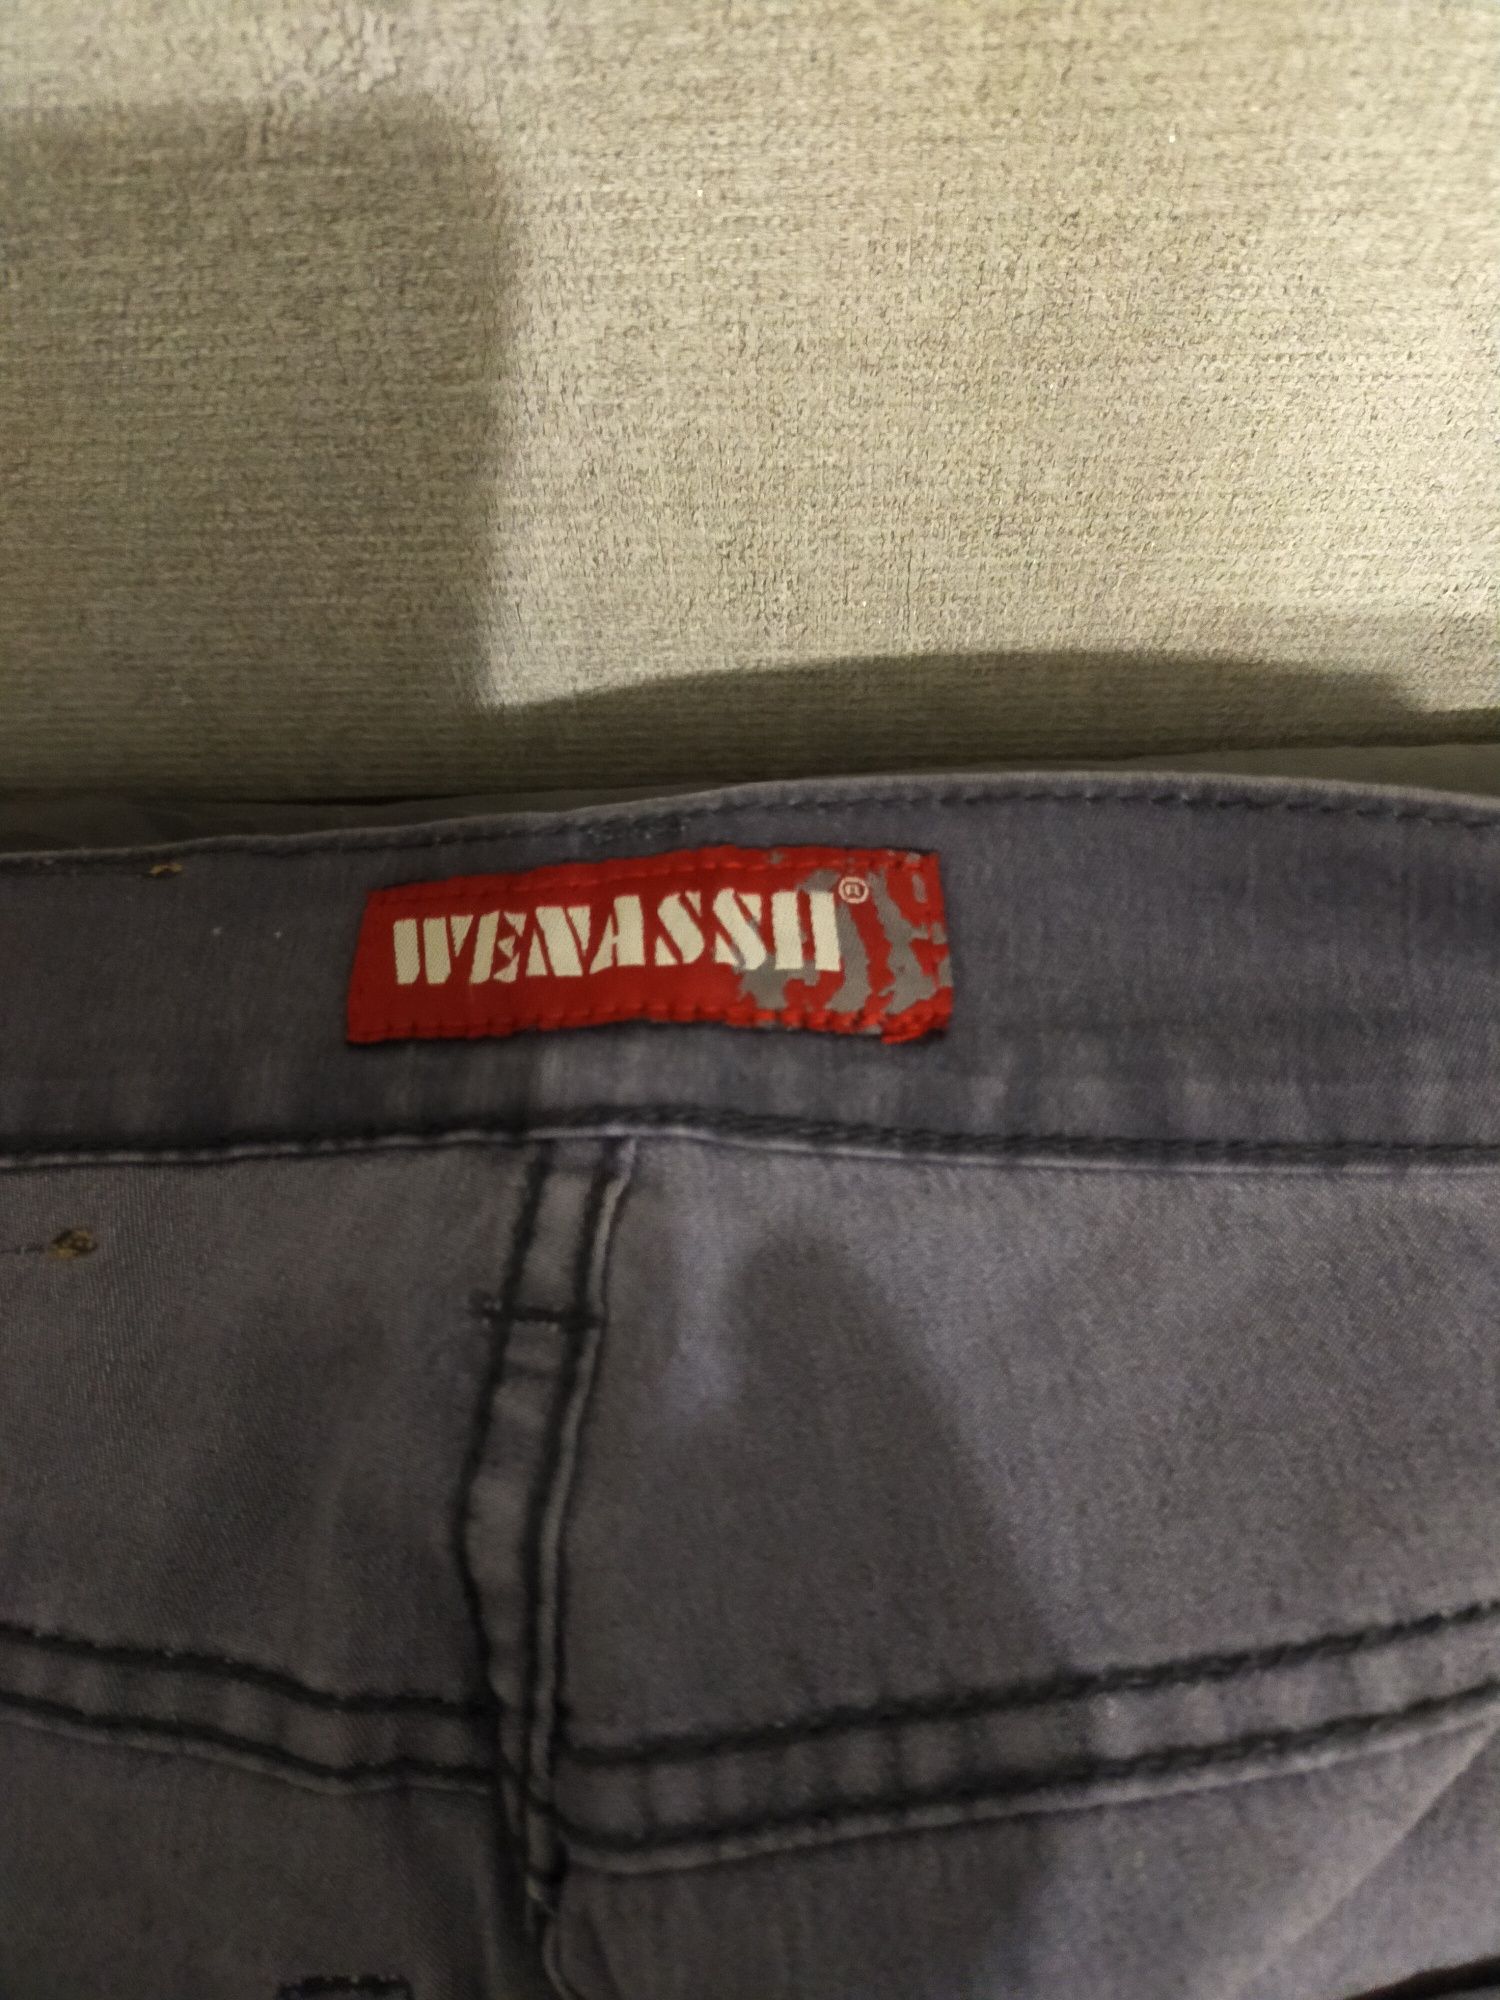 Продам джинсы.Новые,серого цвета